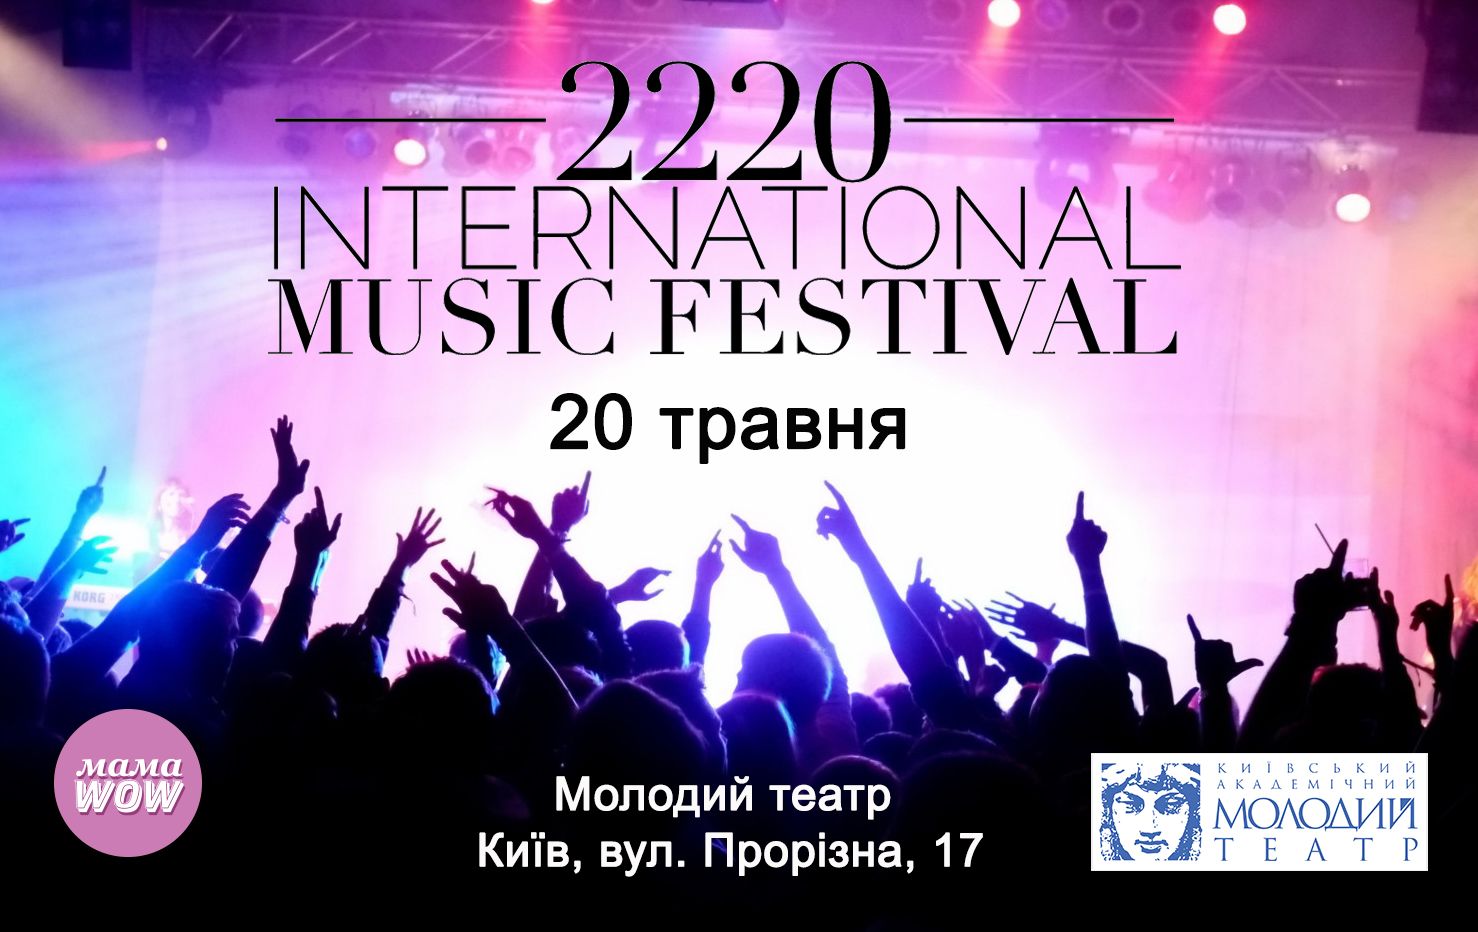 Вокальный конкурс 2220 International Music Festival